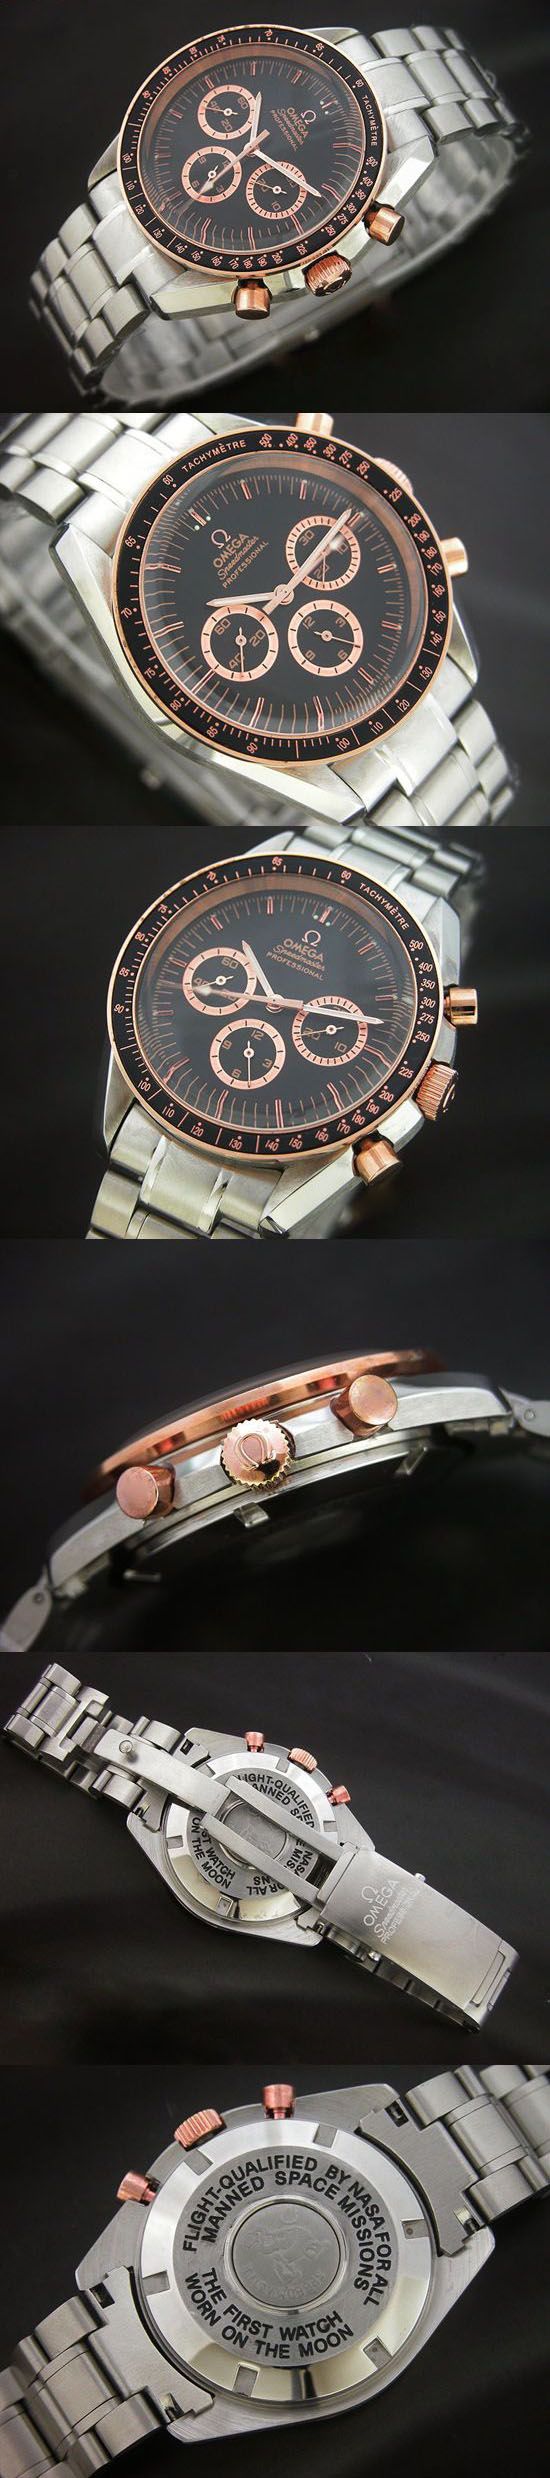 おしゃれなブランド時計がスピードマスター-OMEGA-3366.51-オメガ-男性用を提供します.